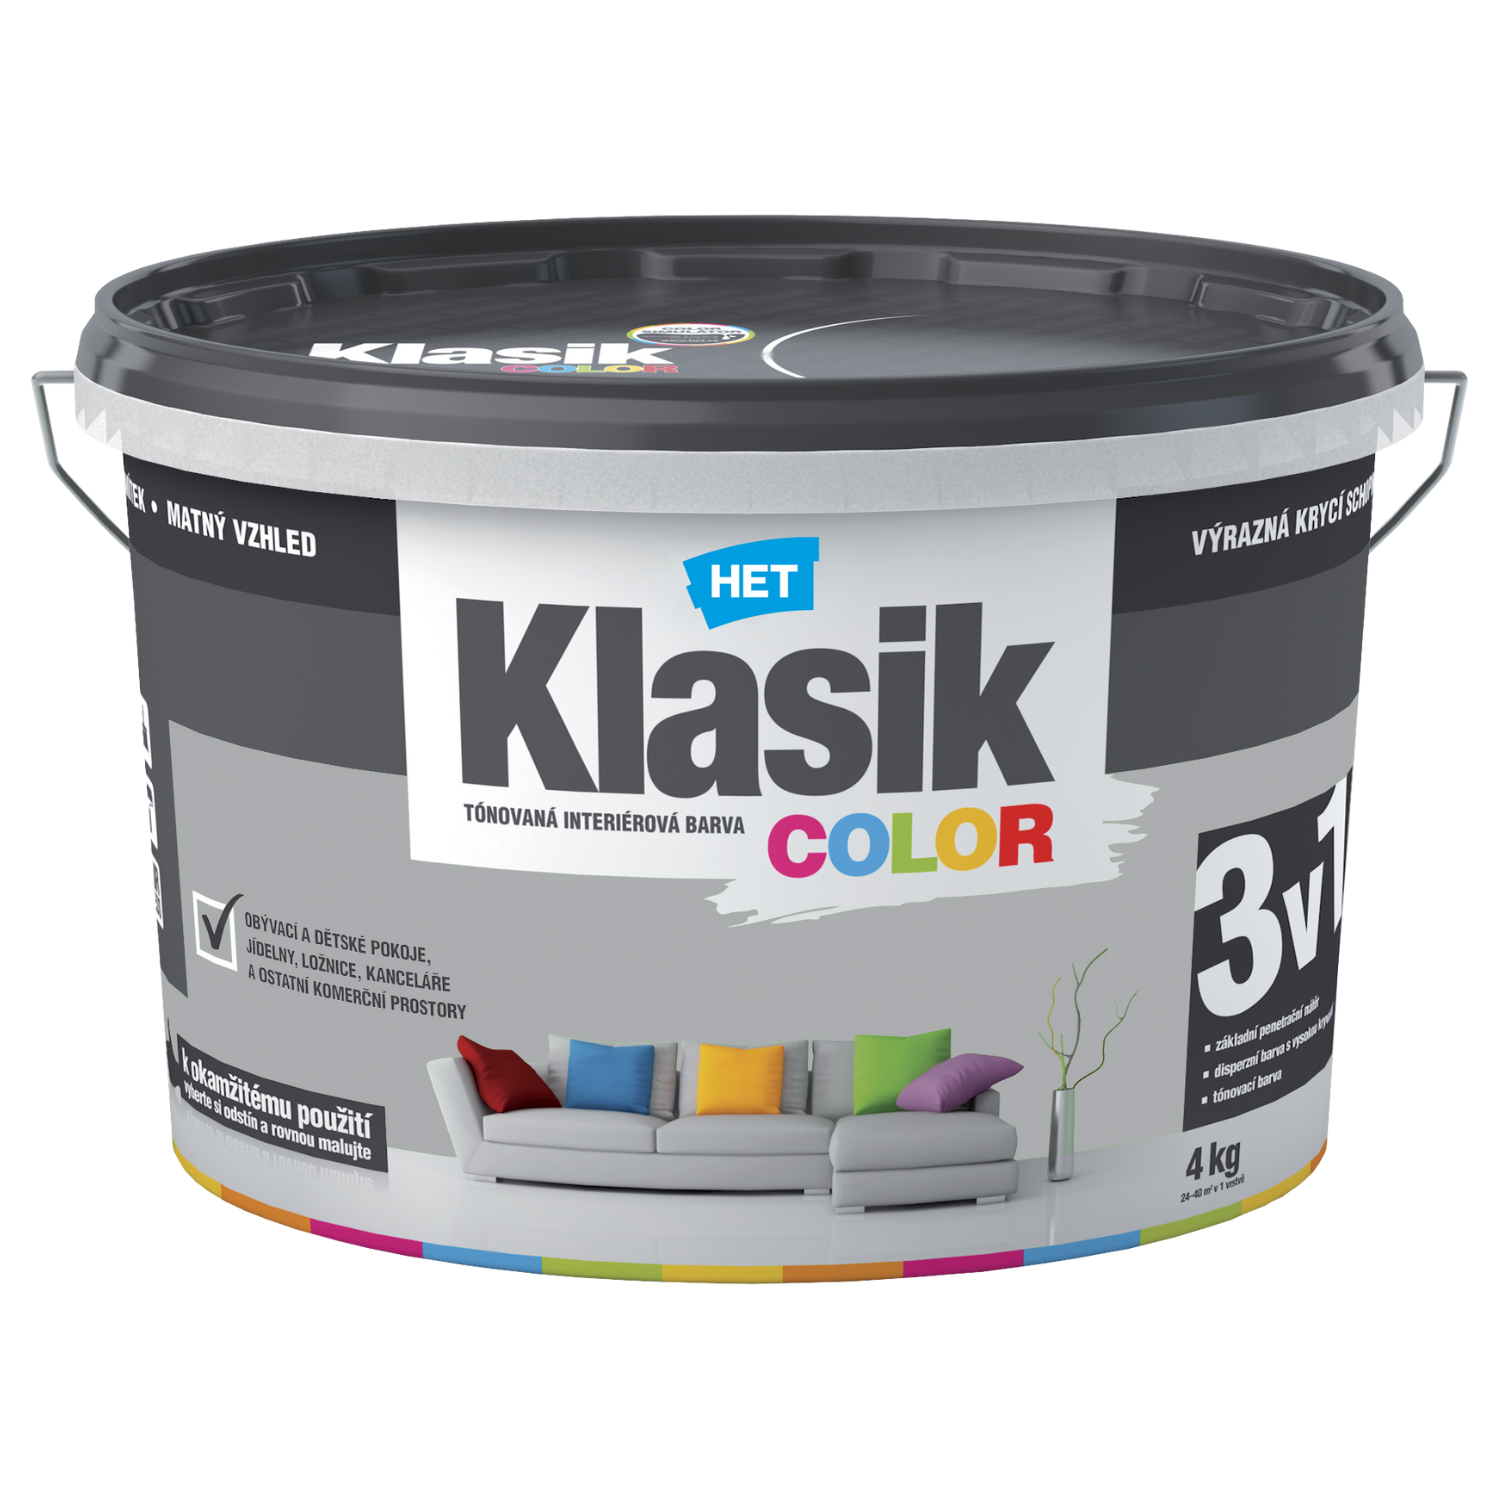 HET Klasik COLOR tónovaná interiérová akrylátová disperzná oteruvzdorná farba 4 kg, KC0147 - šedý bridlicový